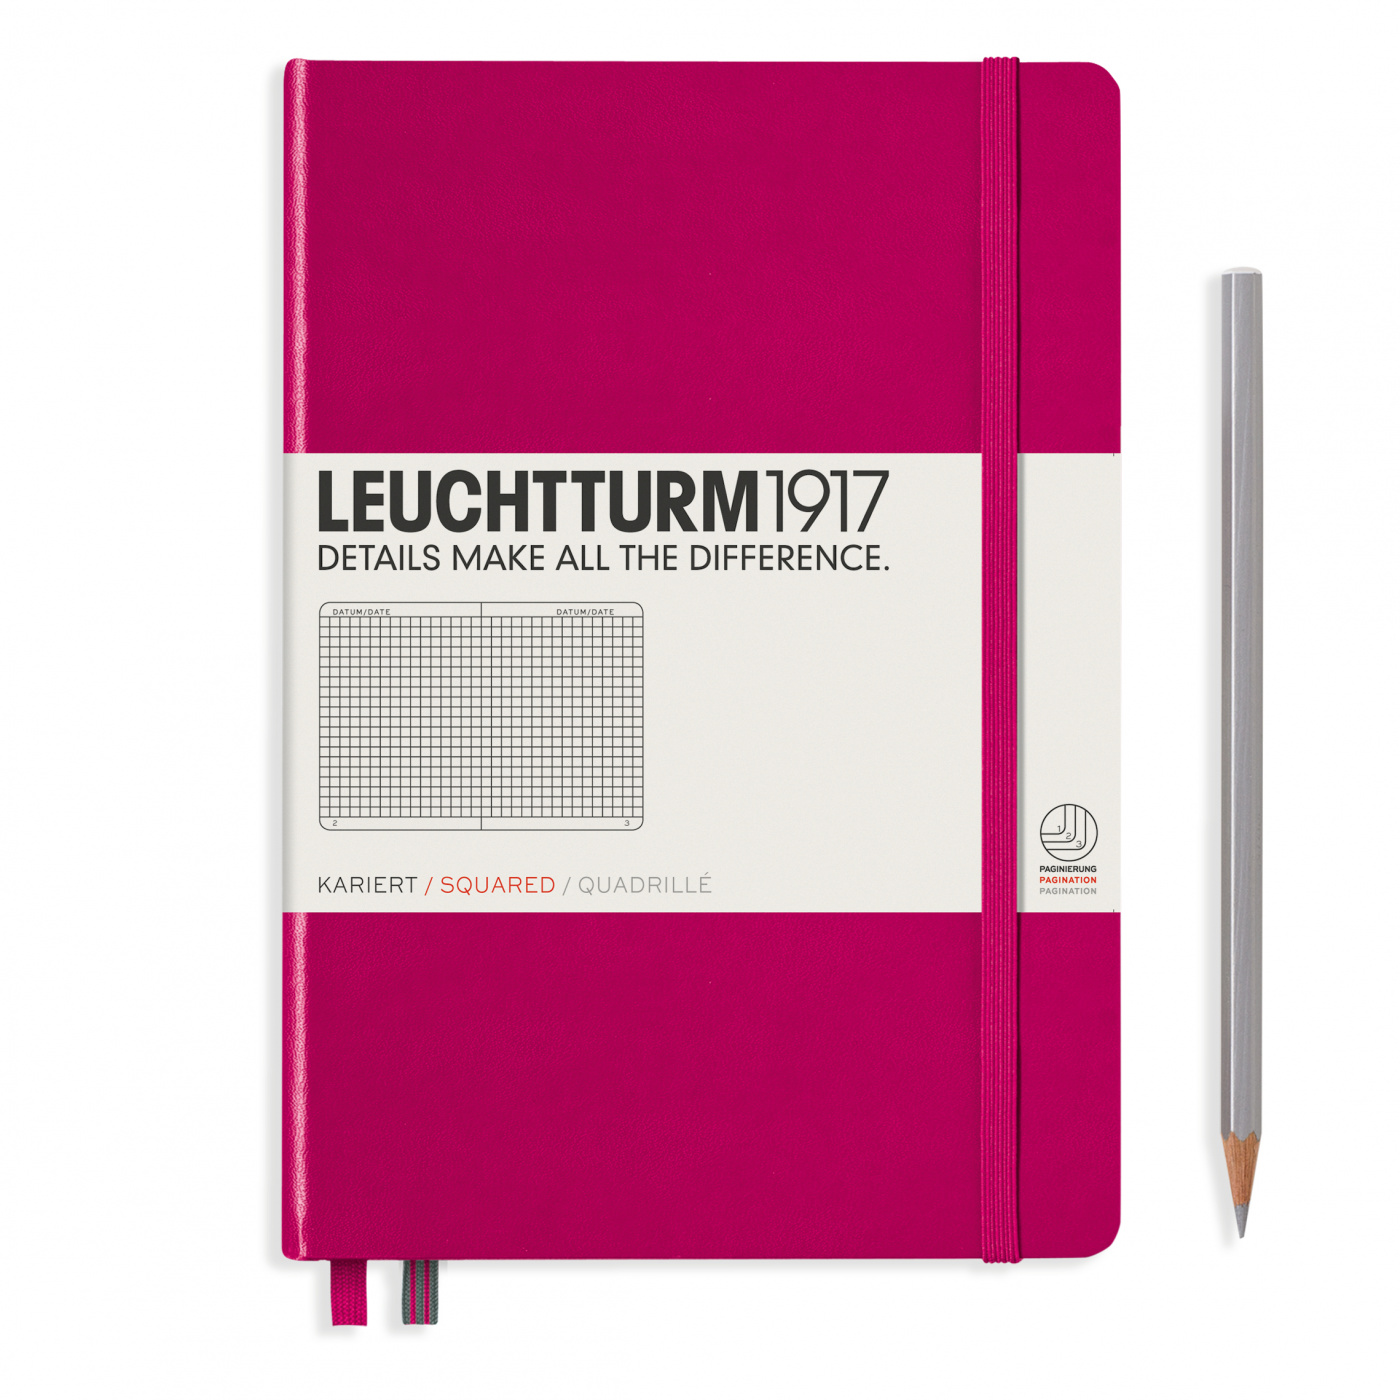 Записная книжка в клетку Leuchtturm A5 251 стр., твердая обложка розовая волк и семеро козлят книжка панорама с движущимися картинками вырубка на обложке картон хромэрзац 320 г